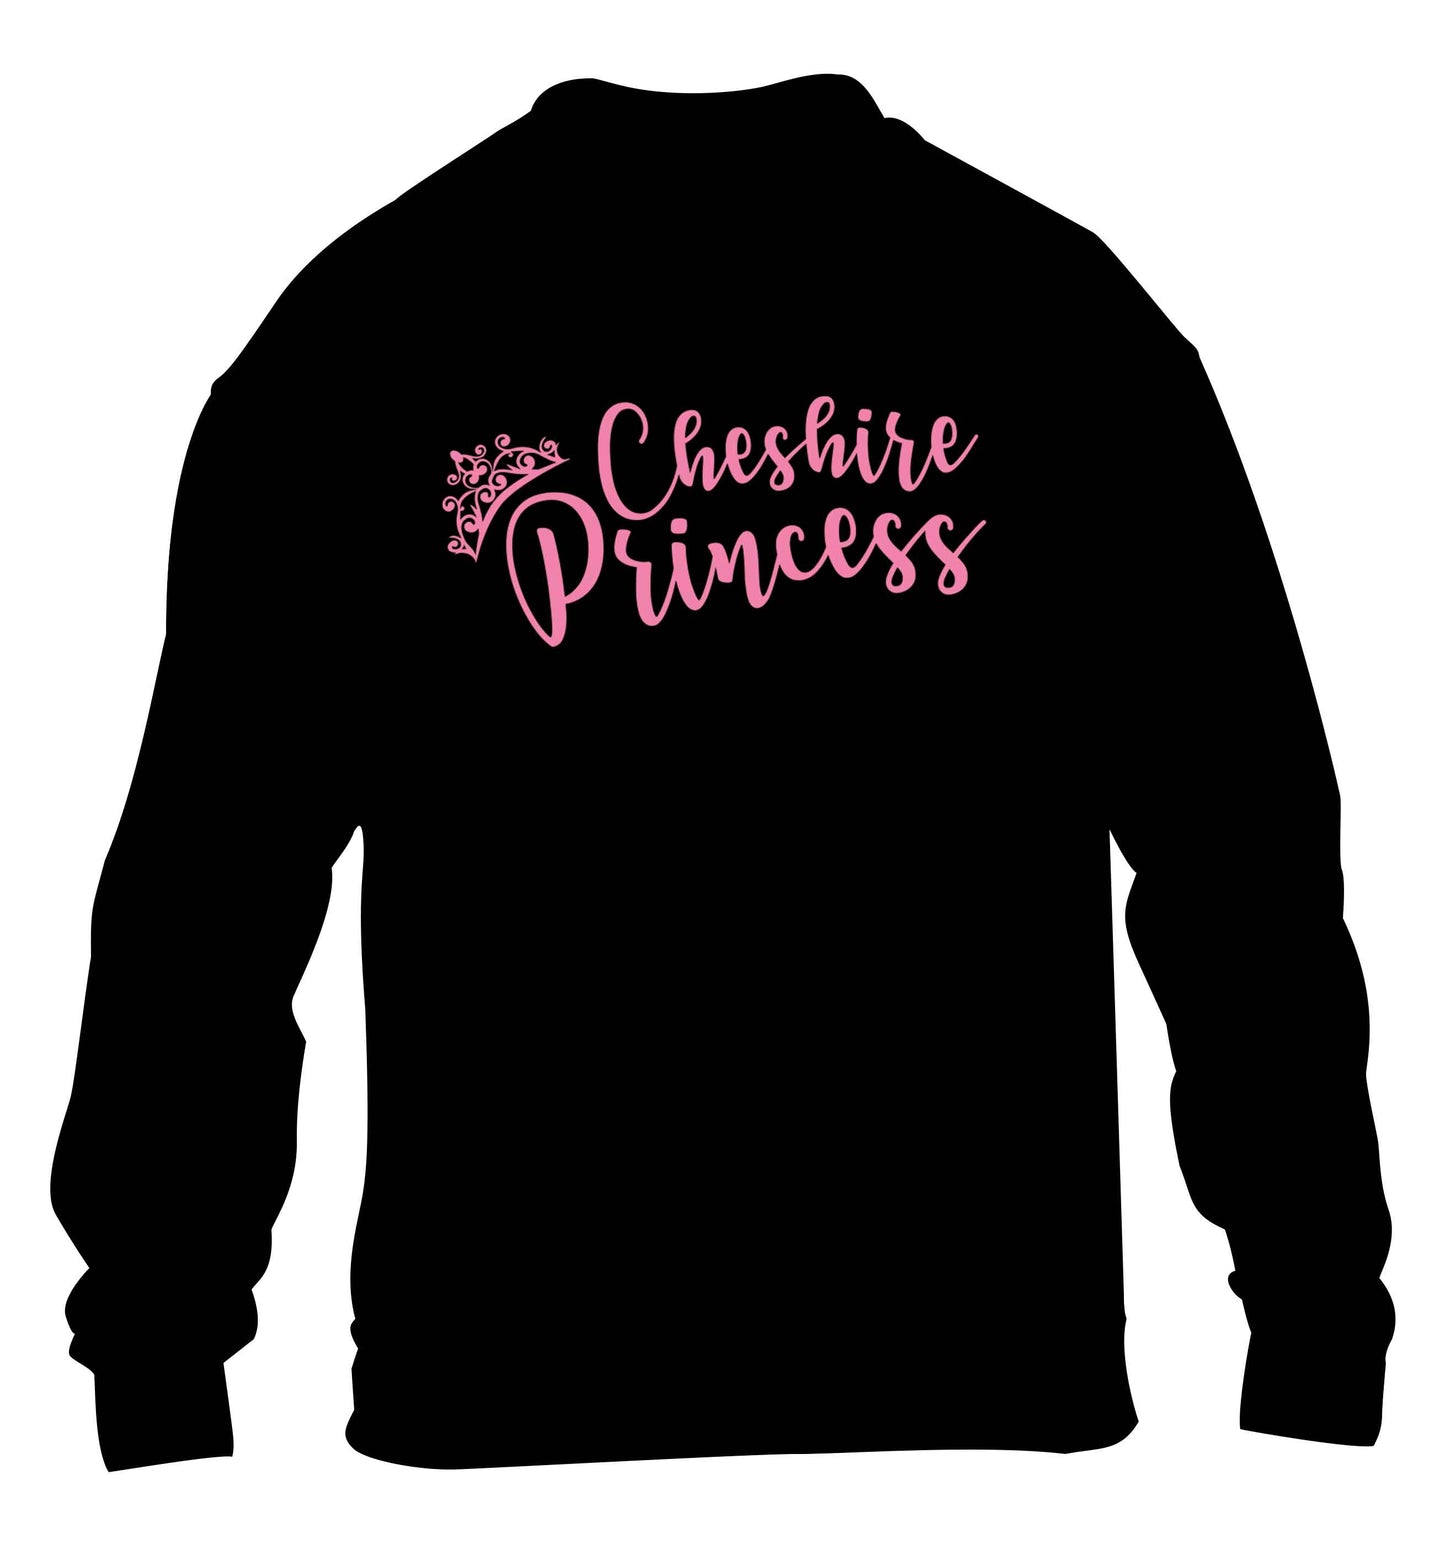 Cheshire princess children's black sweater 12-13 Years